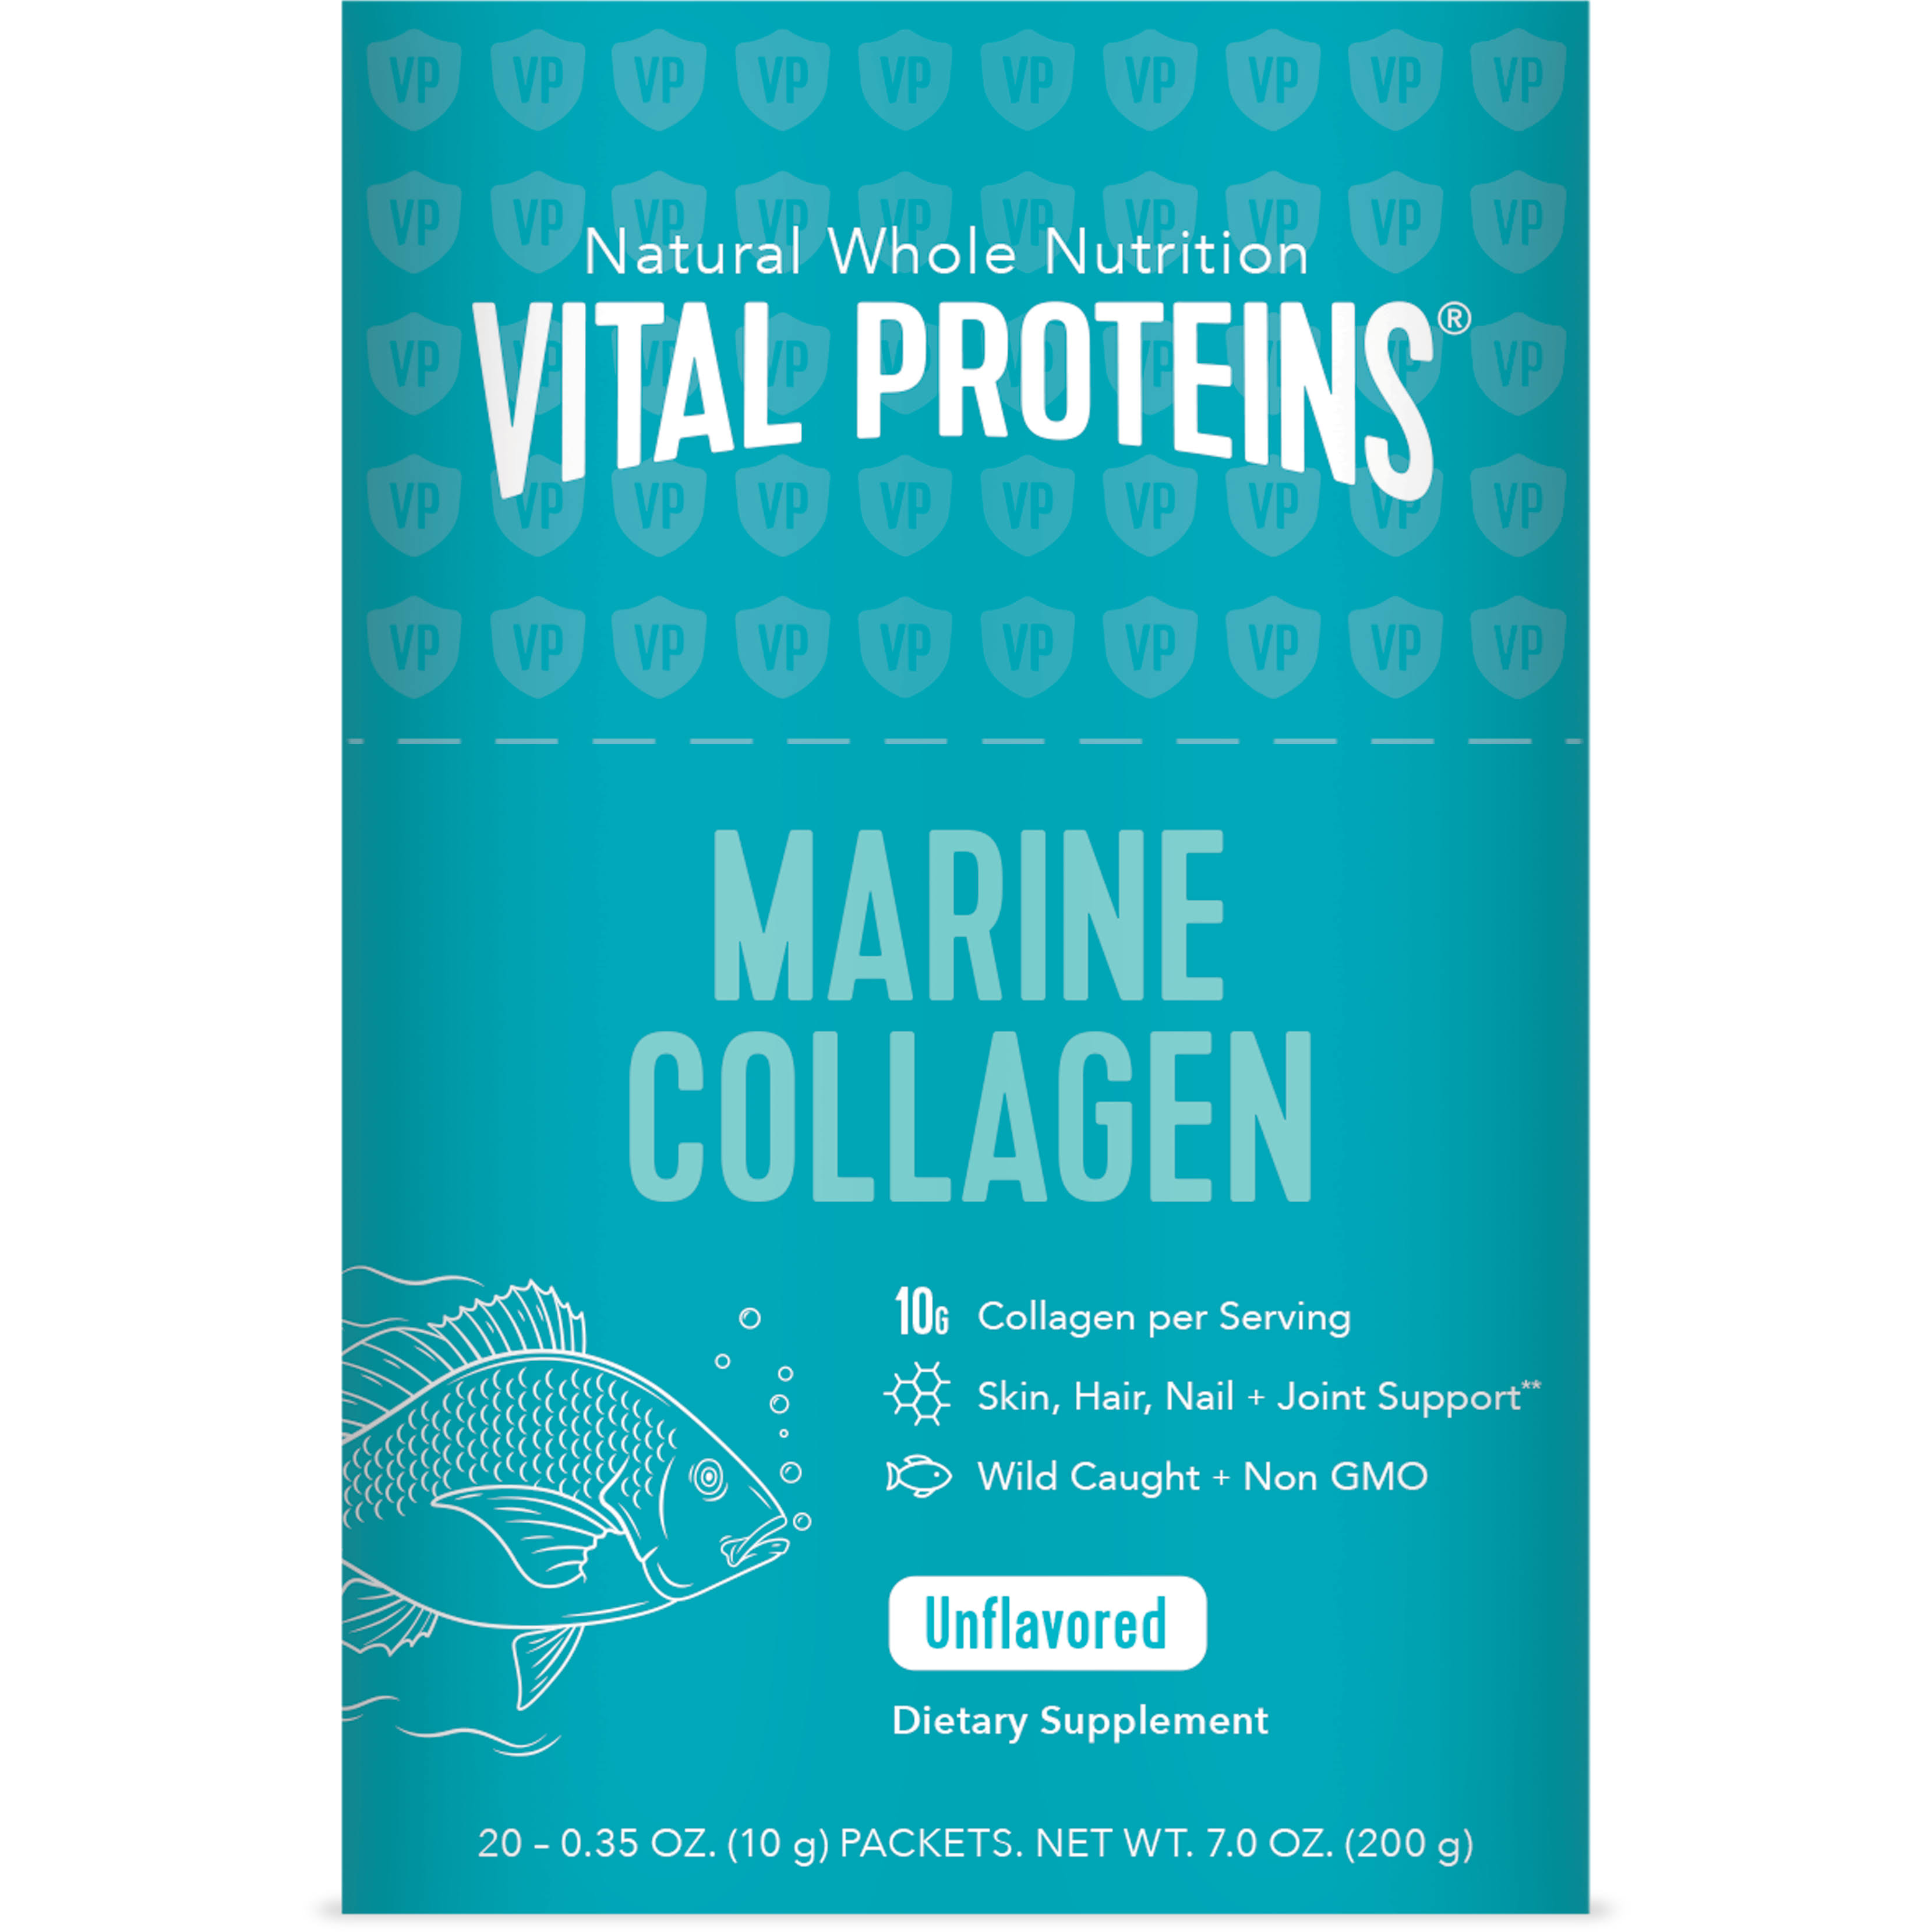 Marine Collagen - Stick pack